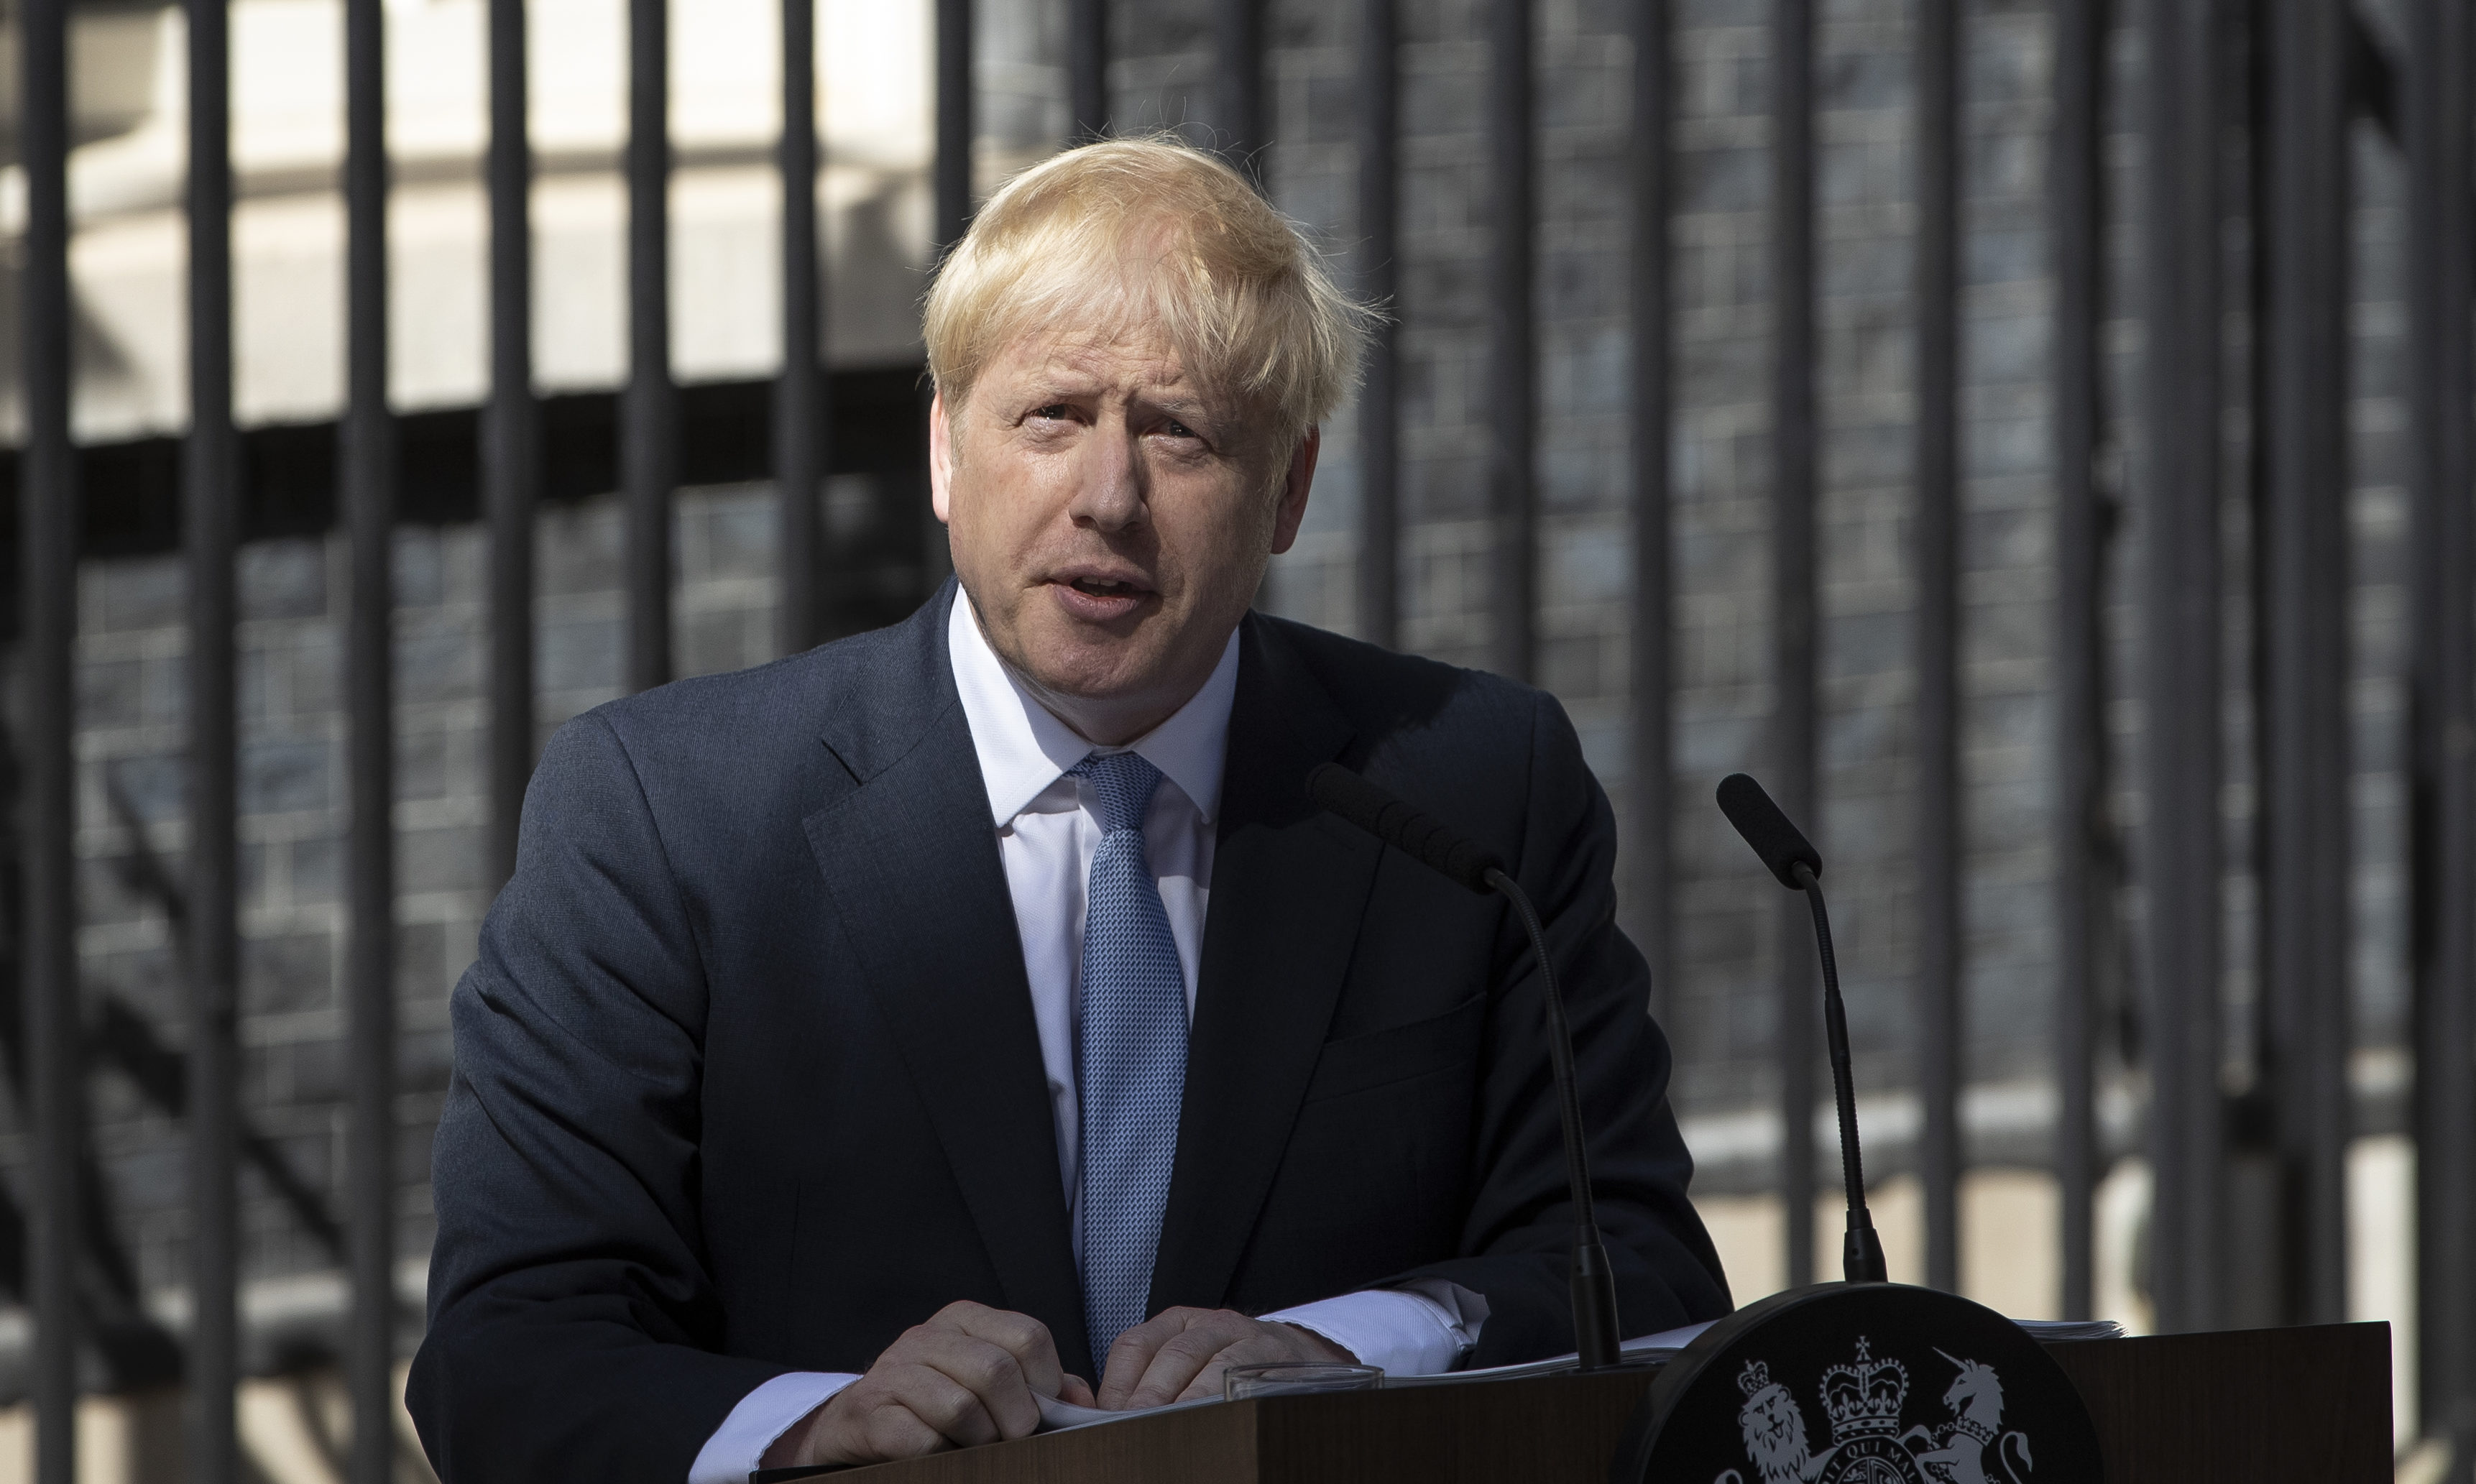 New Prime Minister Boris Johnson speaks to media outside Number 10 Downing Street.